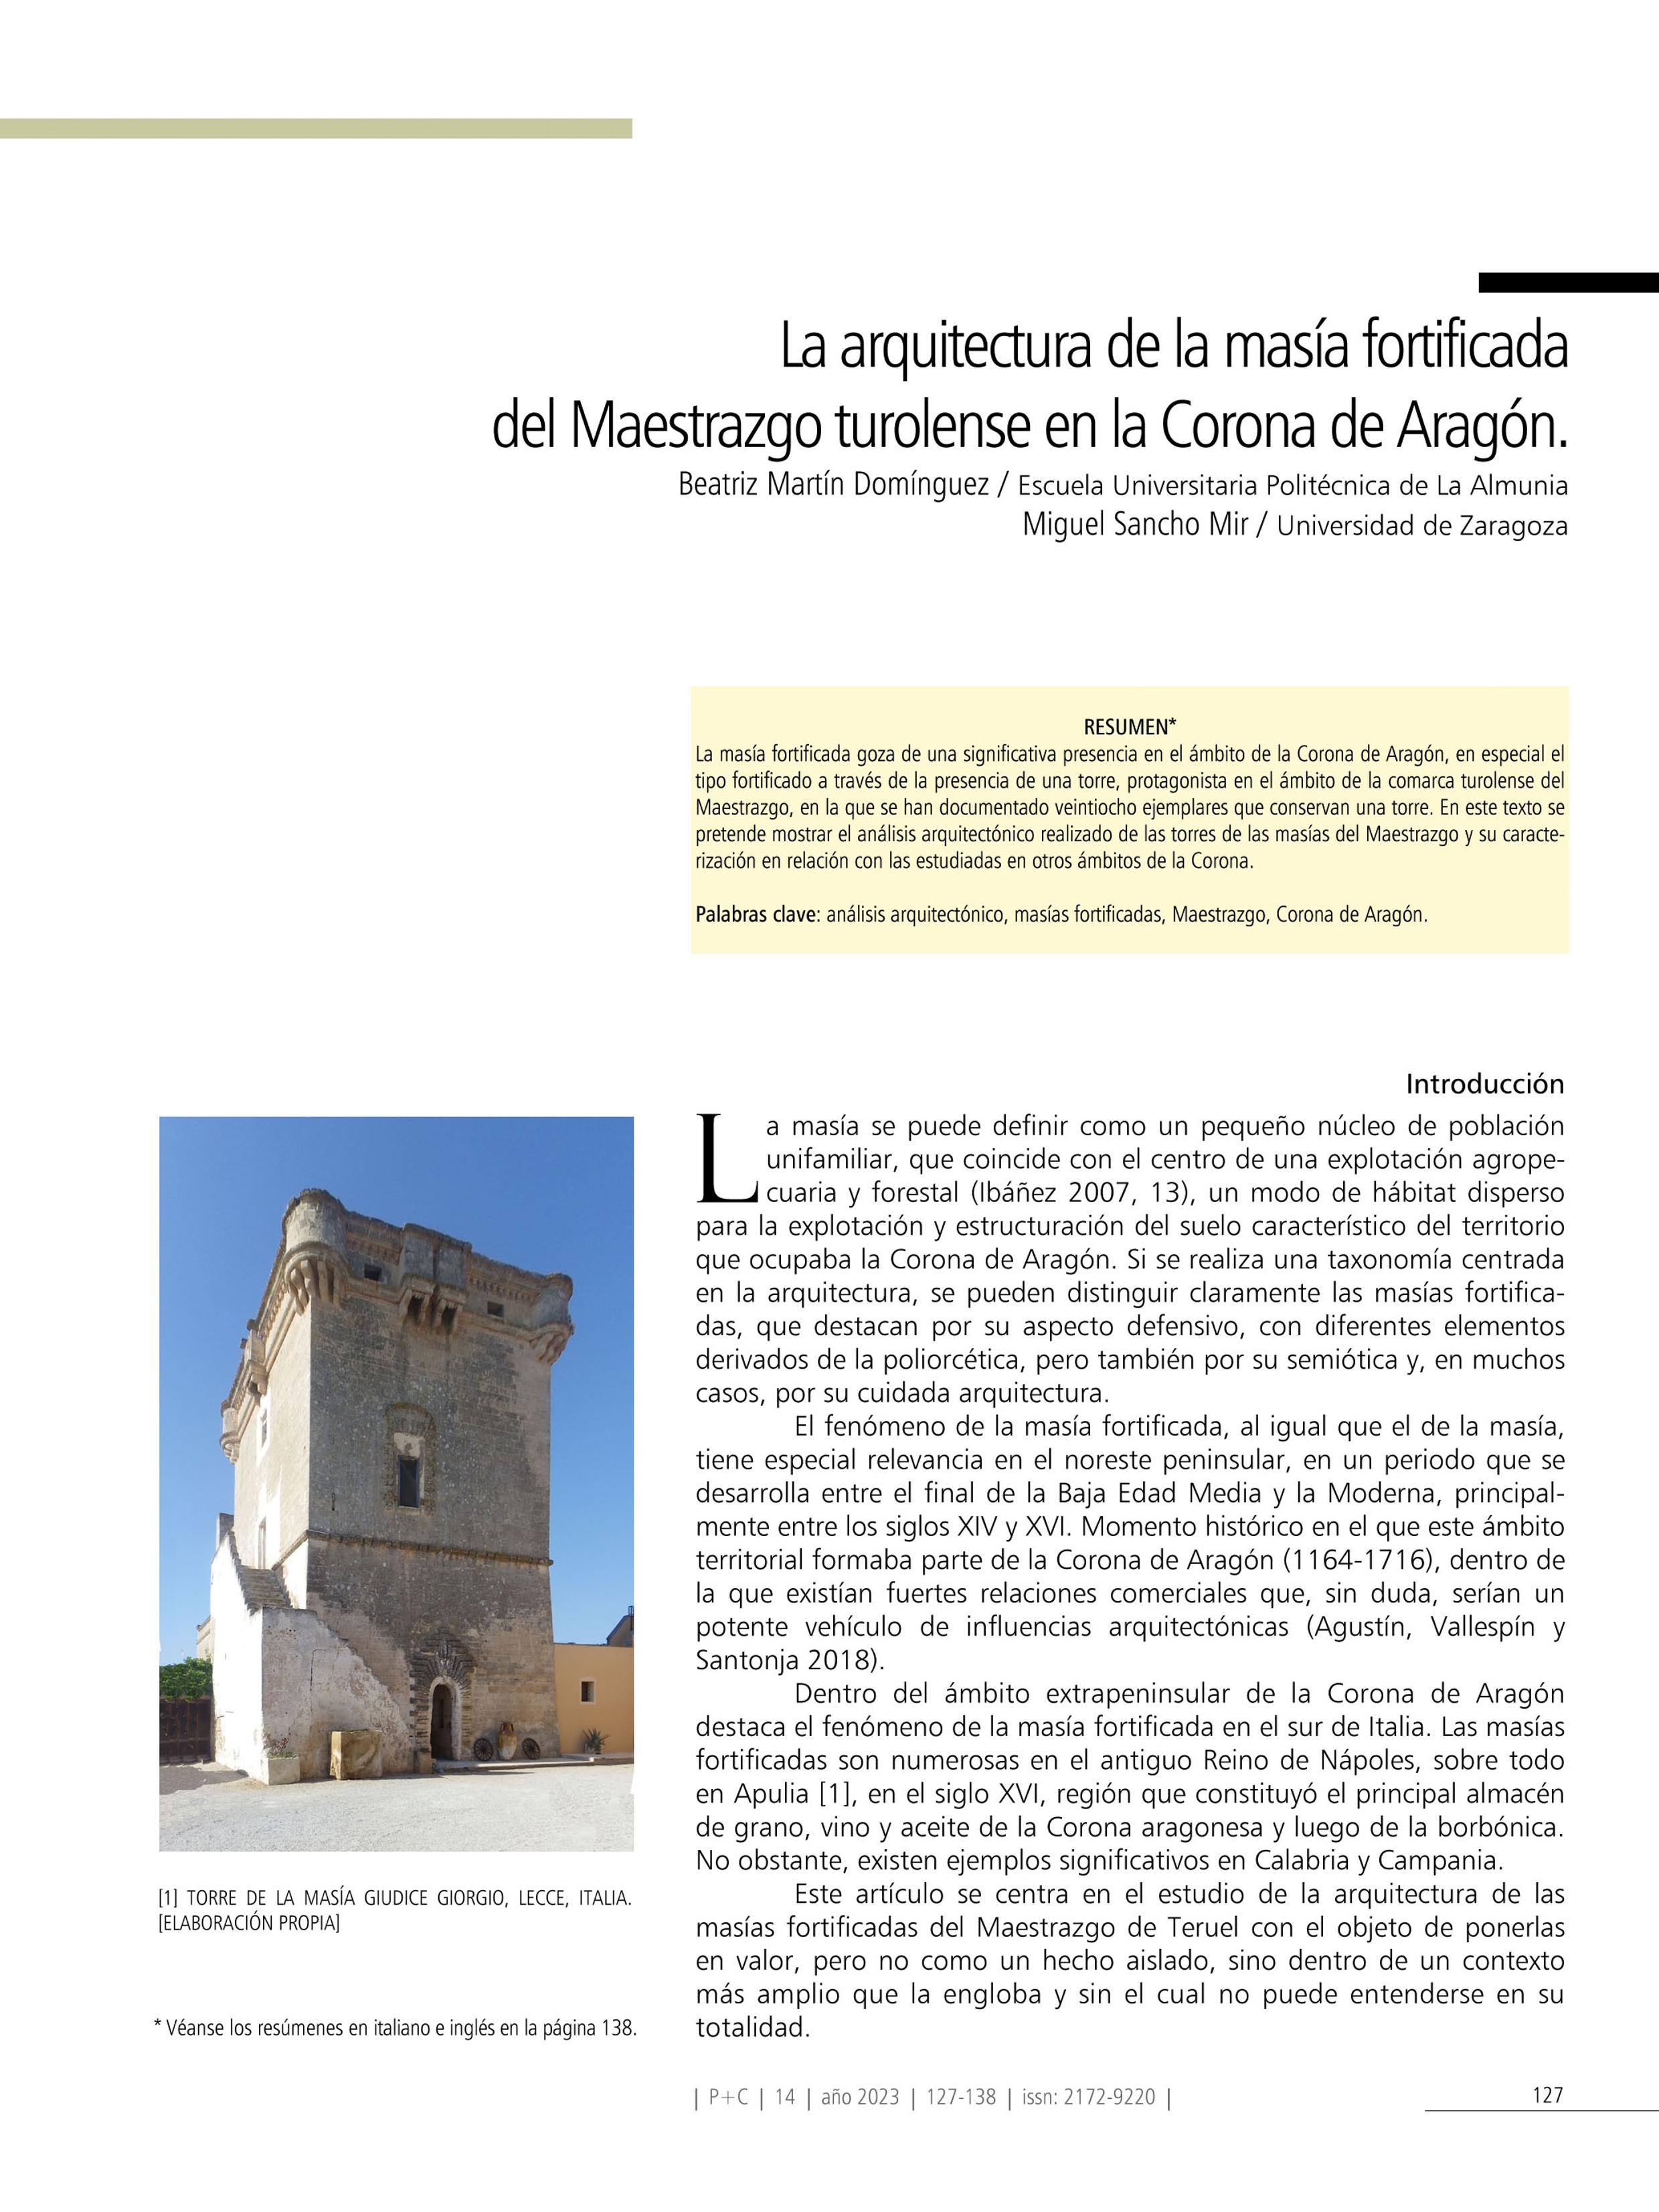 La arquitectura de la masía fortificada del Maestrazgo turolense en la Corona de Aragón